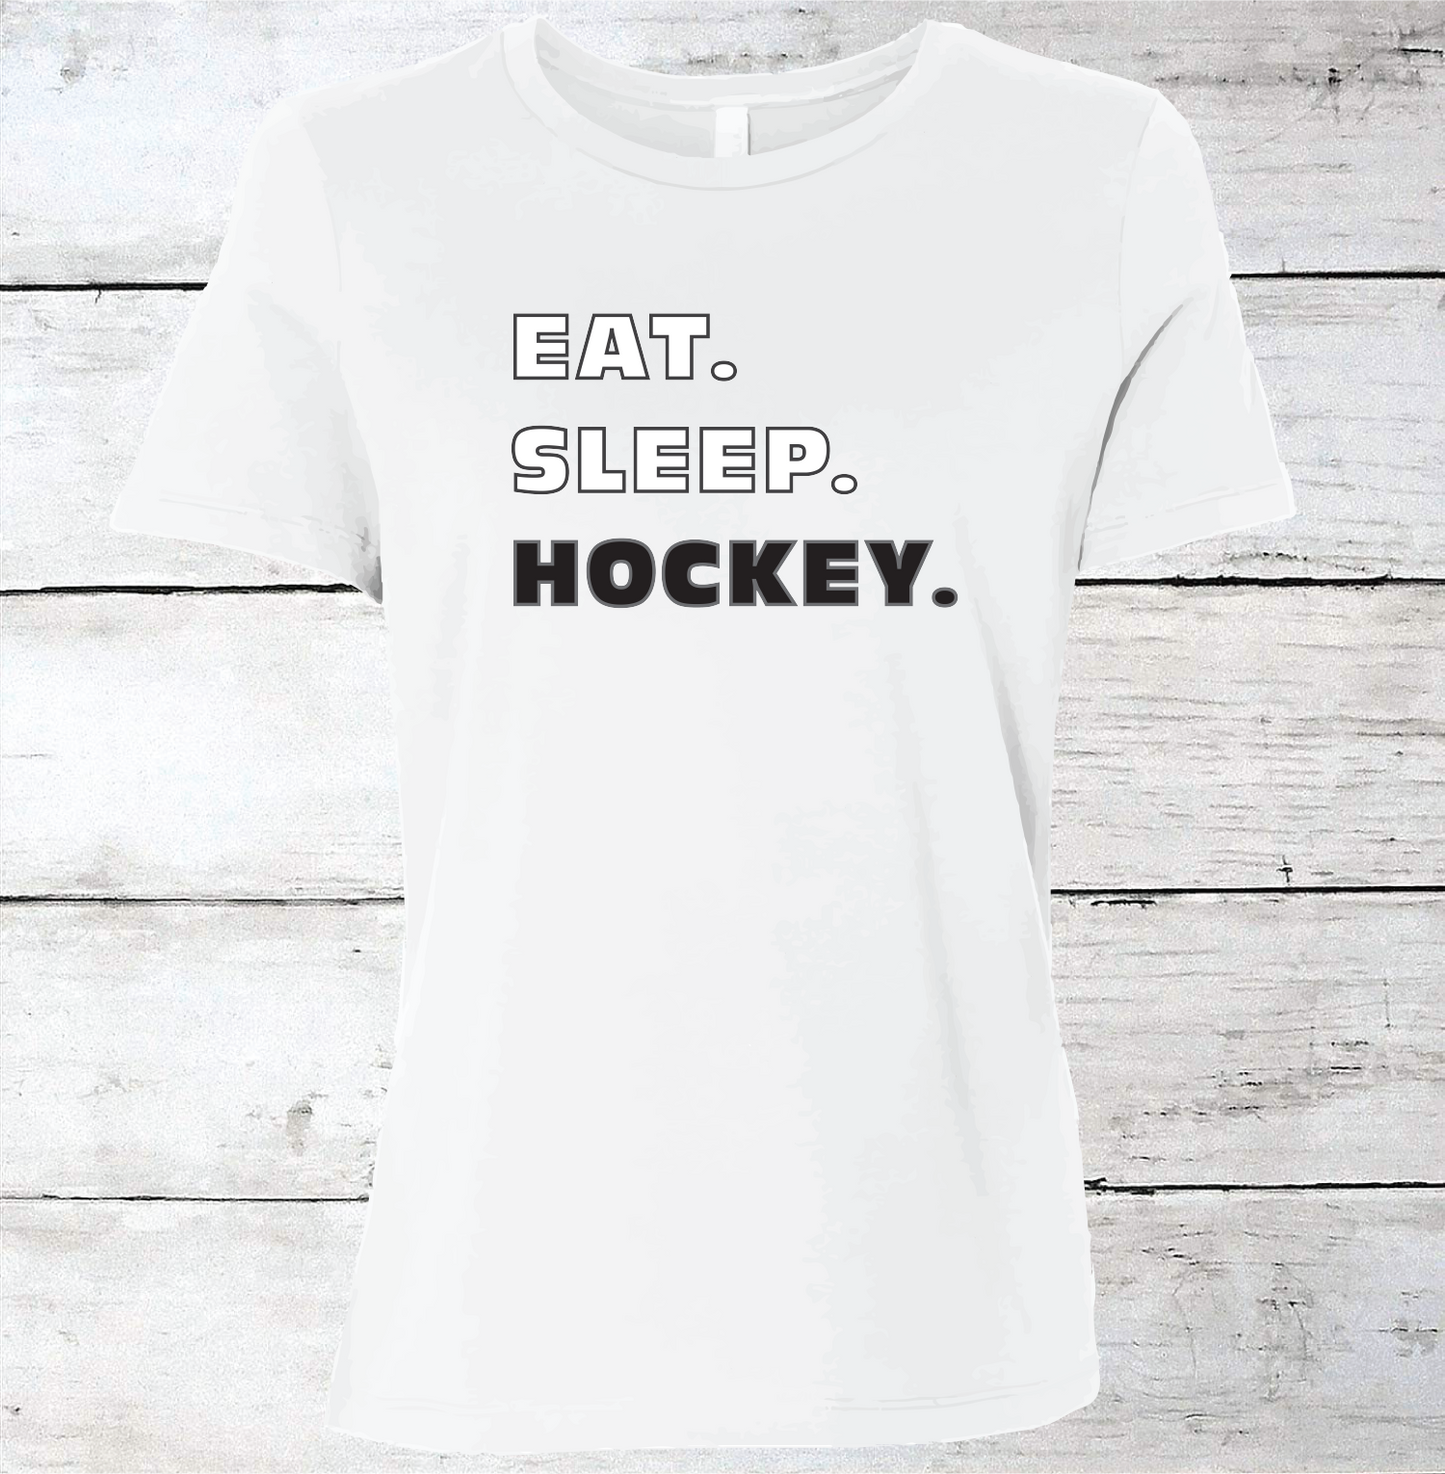 Eat. Sleep. Hockey. T-Shirt